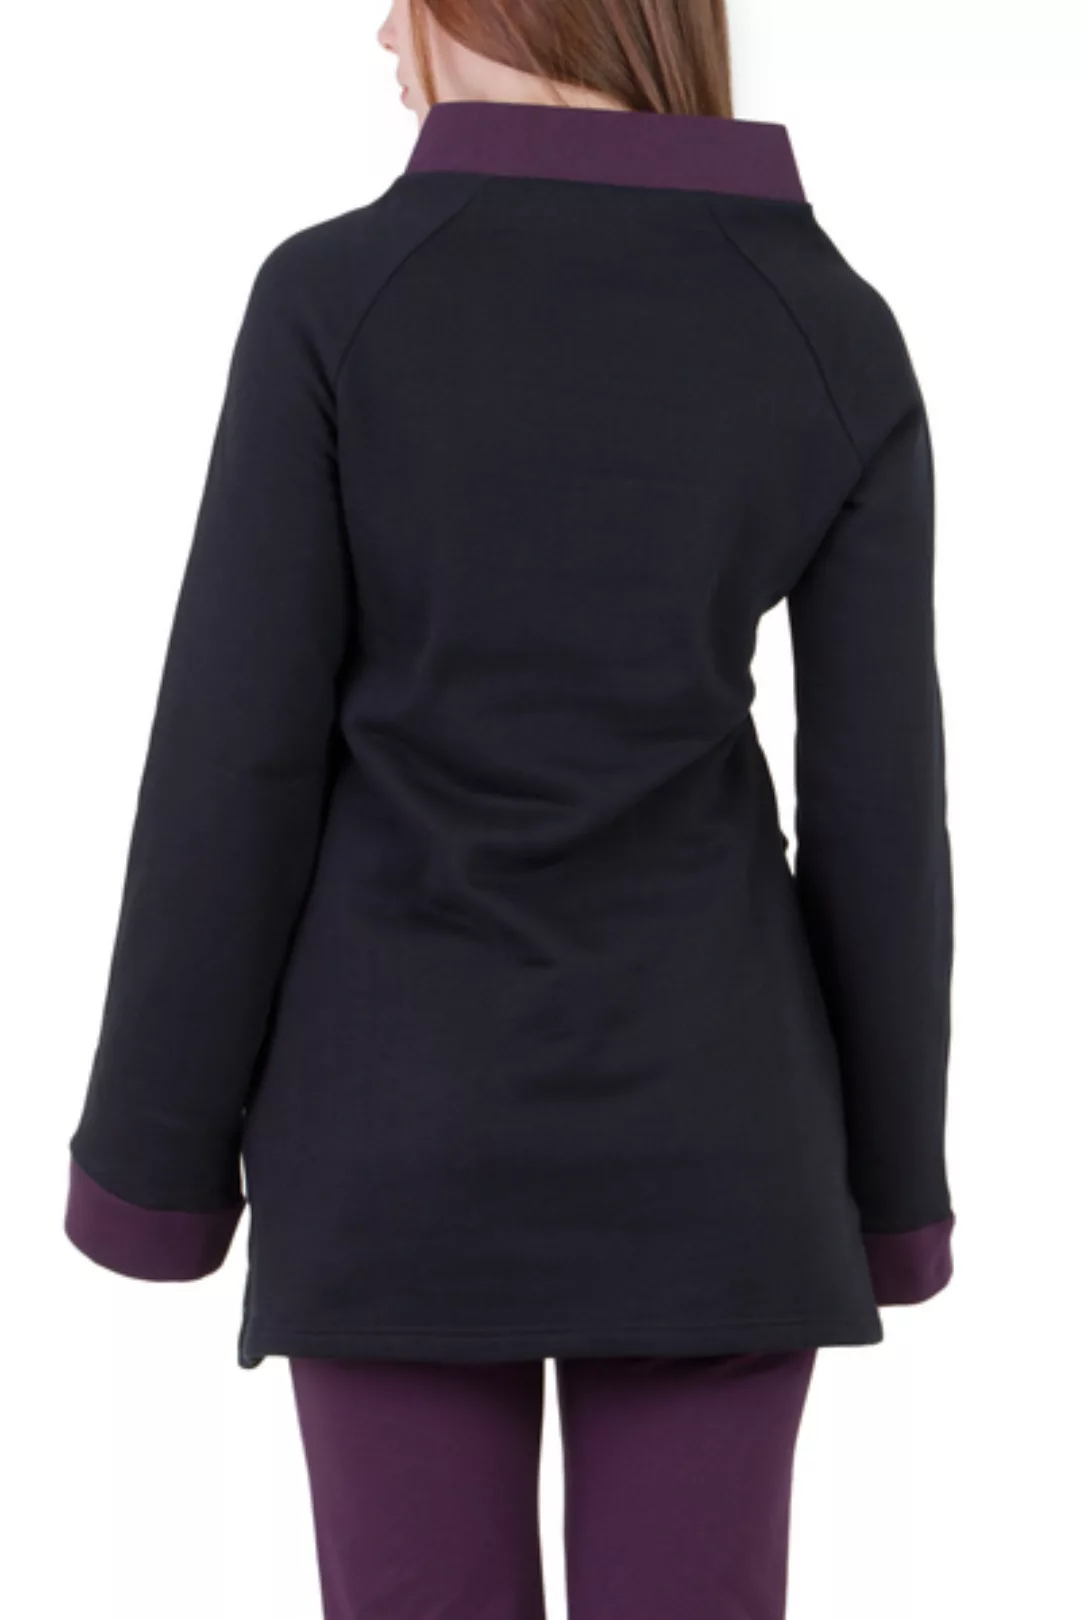 Pullover Jasper Schwarz Violett günstig online kaufen